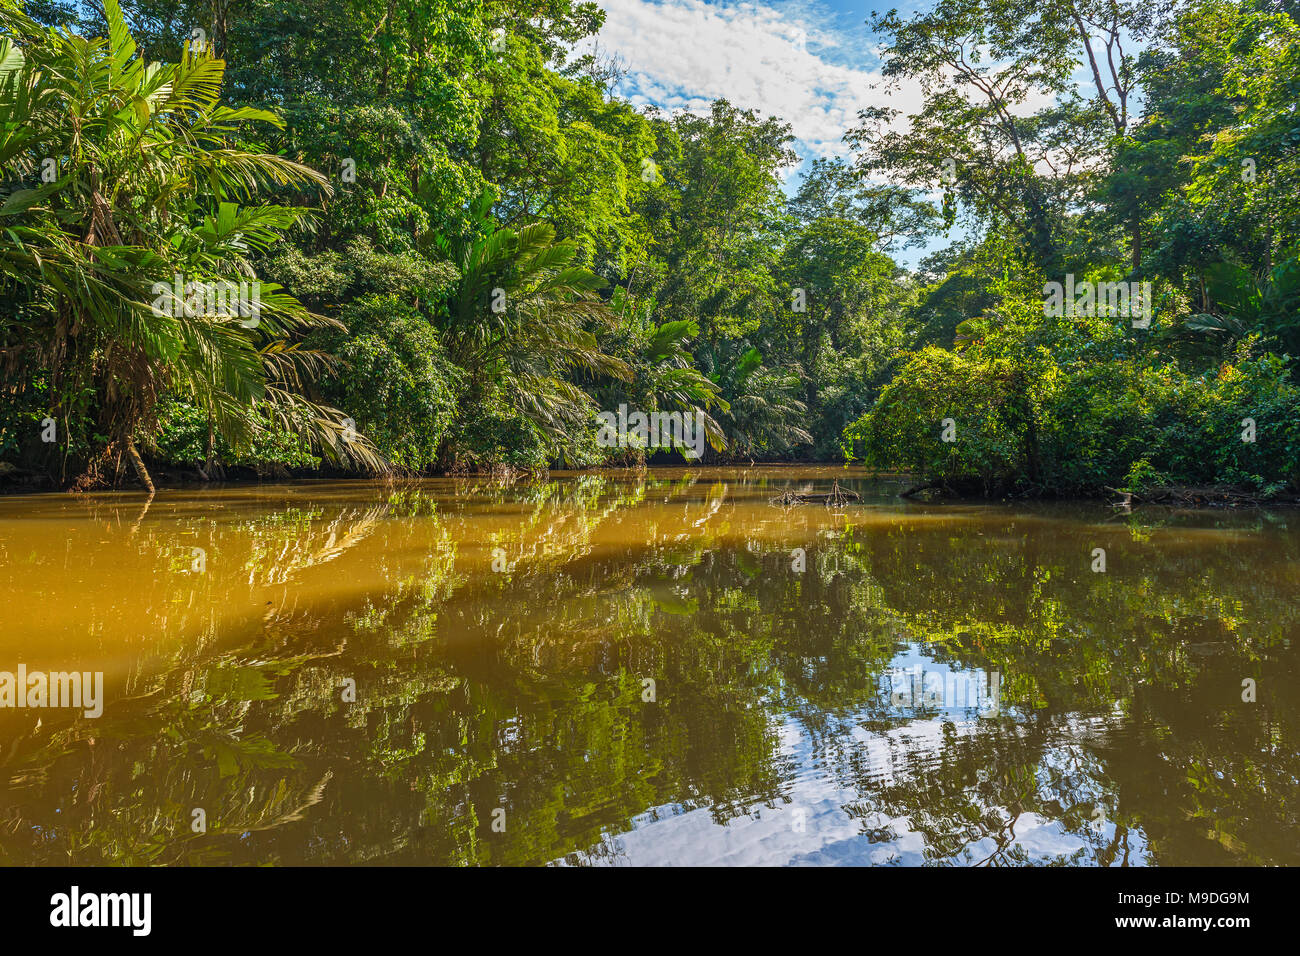 Reflet de la forêt tropicale à l'intérieur du parc national de Tortuguero par la mer des Caraïbes et ses célèbres canaux sur un bateau de tourisme voyage, Costa Rica. Banque D'Images